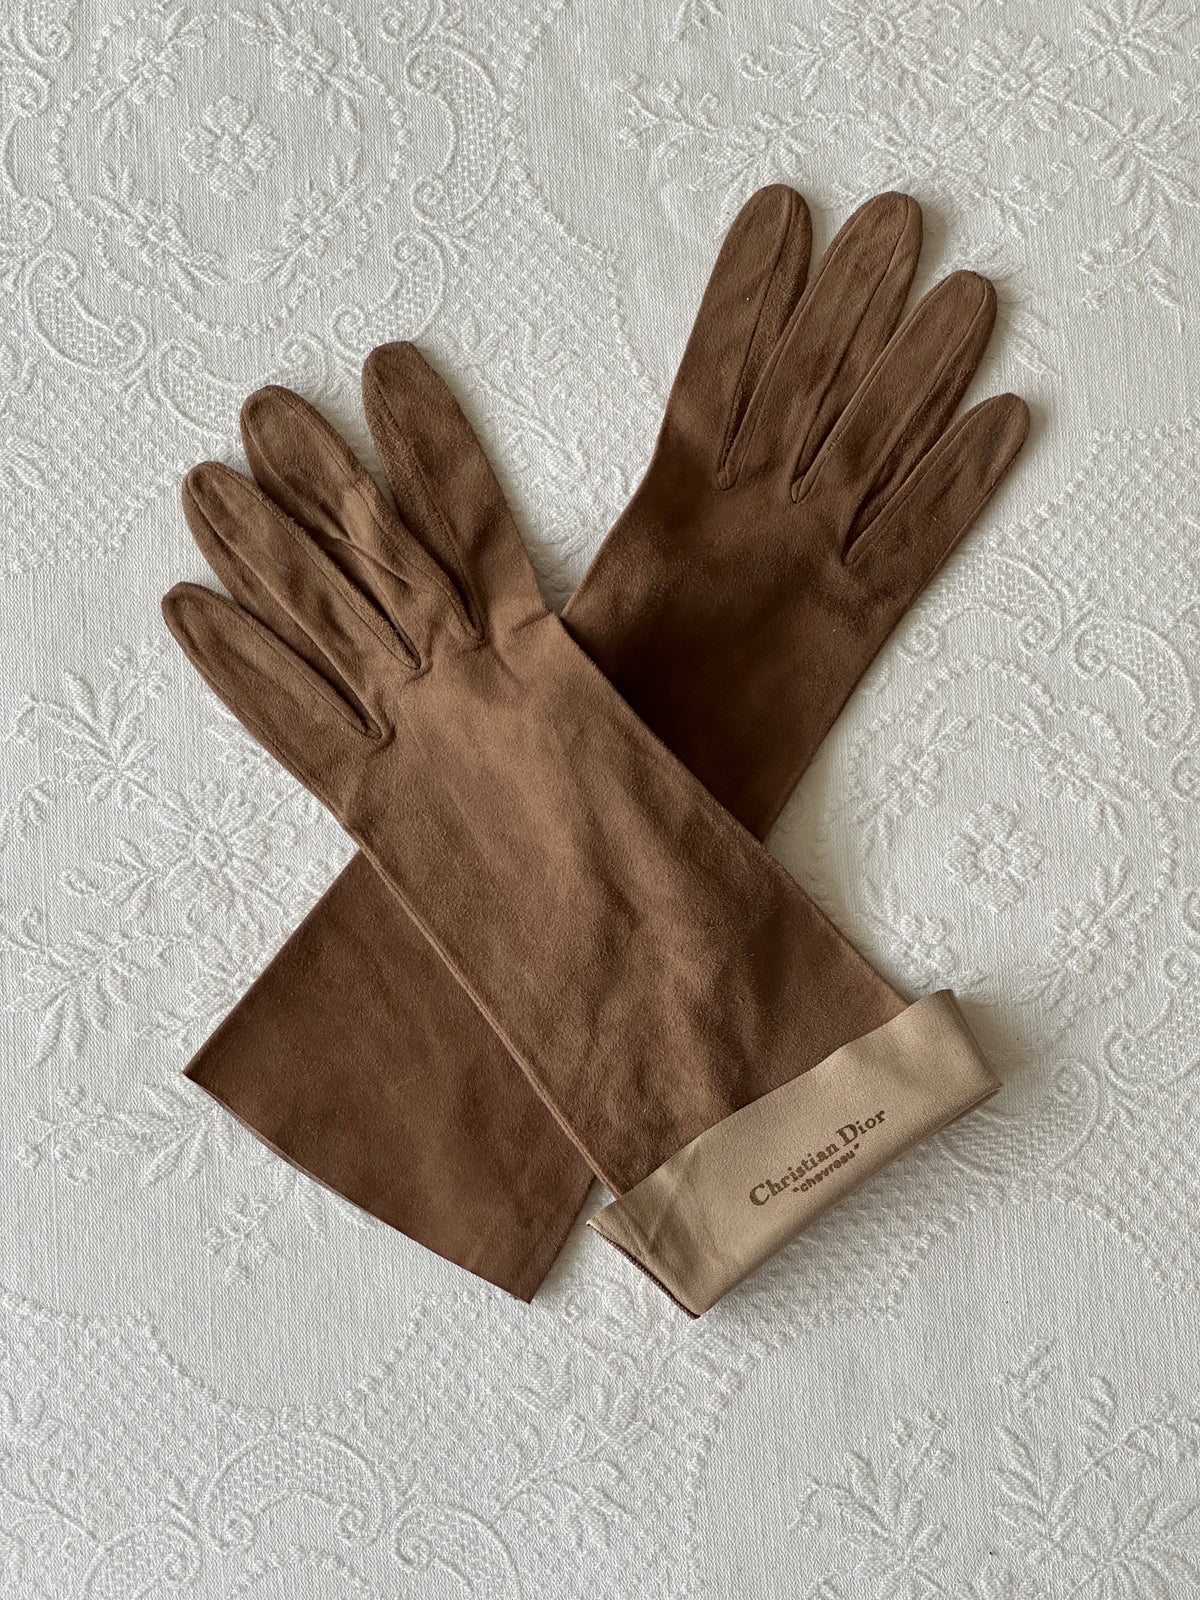 Vintage Dior Gloves